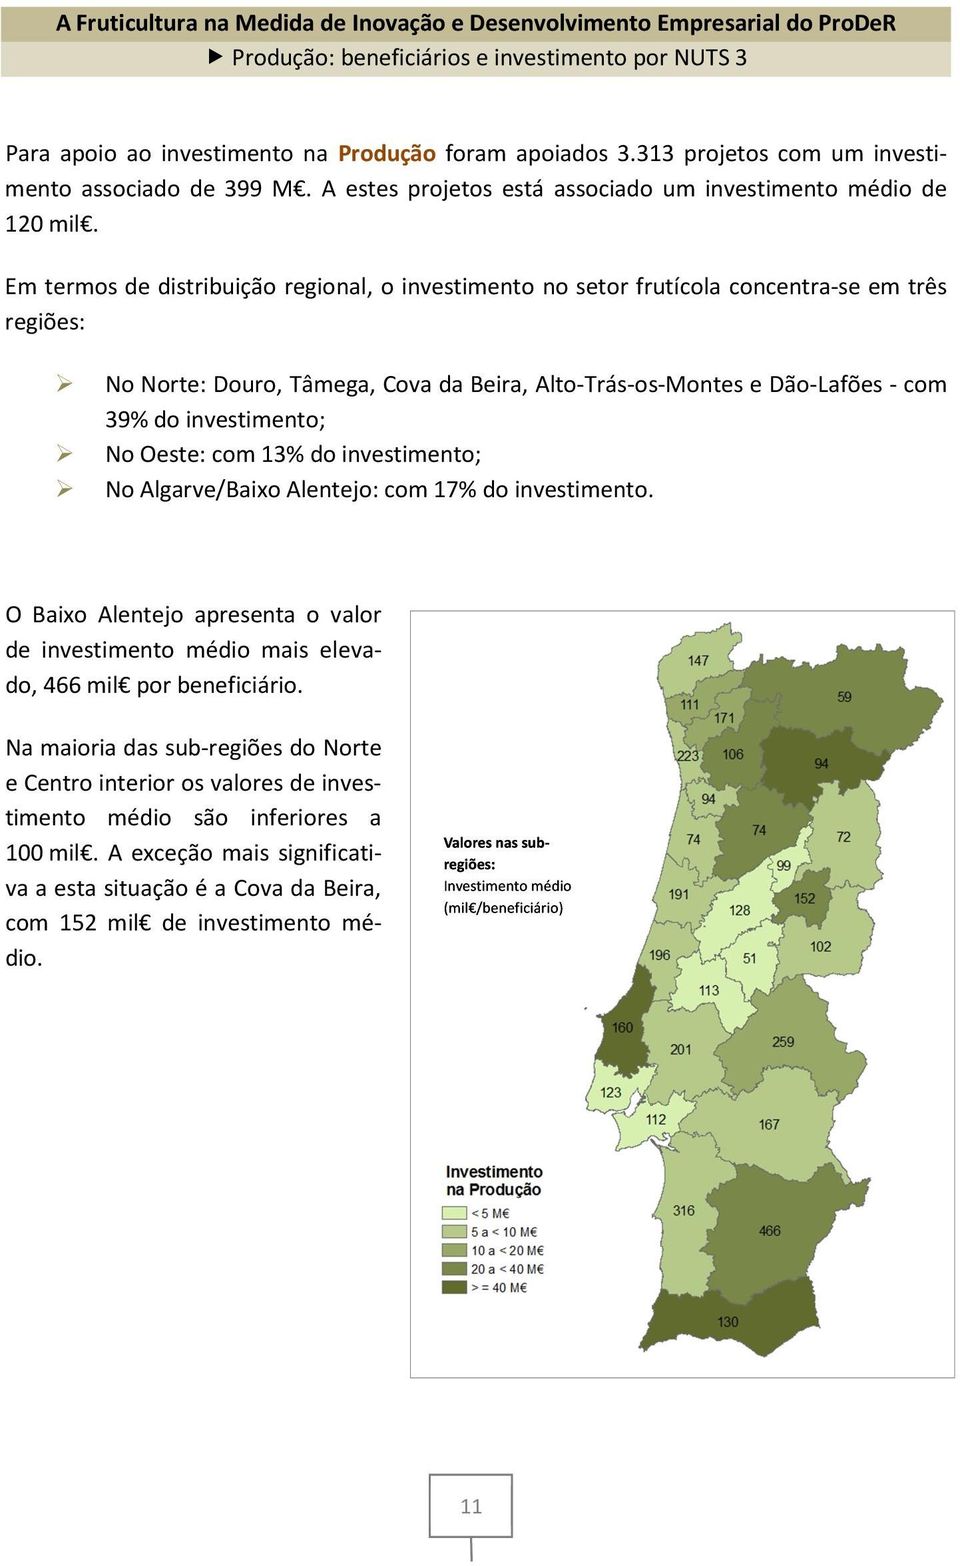 Em termos de distribuição regional, o investimento no setor frutícola concentra-se em três regiões: No Norte: Douro, Tâmega, Cova da Beira, Alto-Trás-os-Montes e Dão-Lafões - com 39% do investimento;